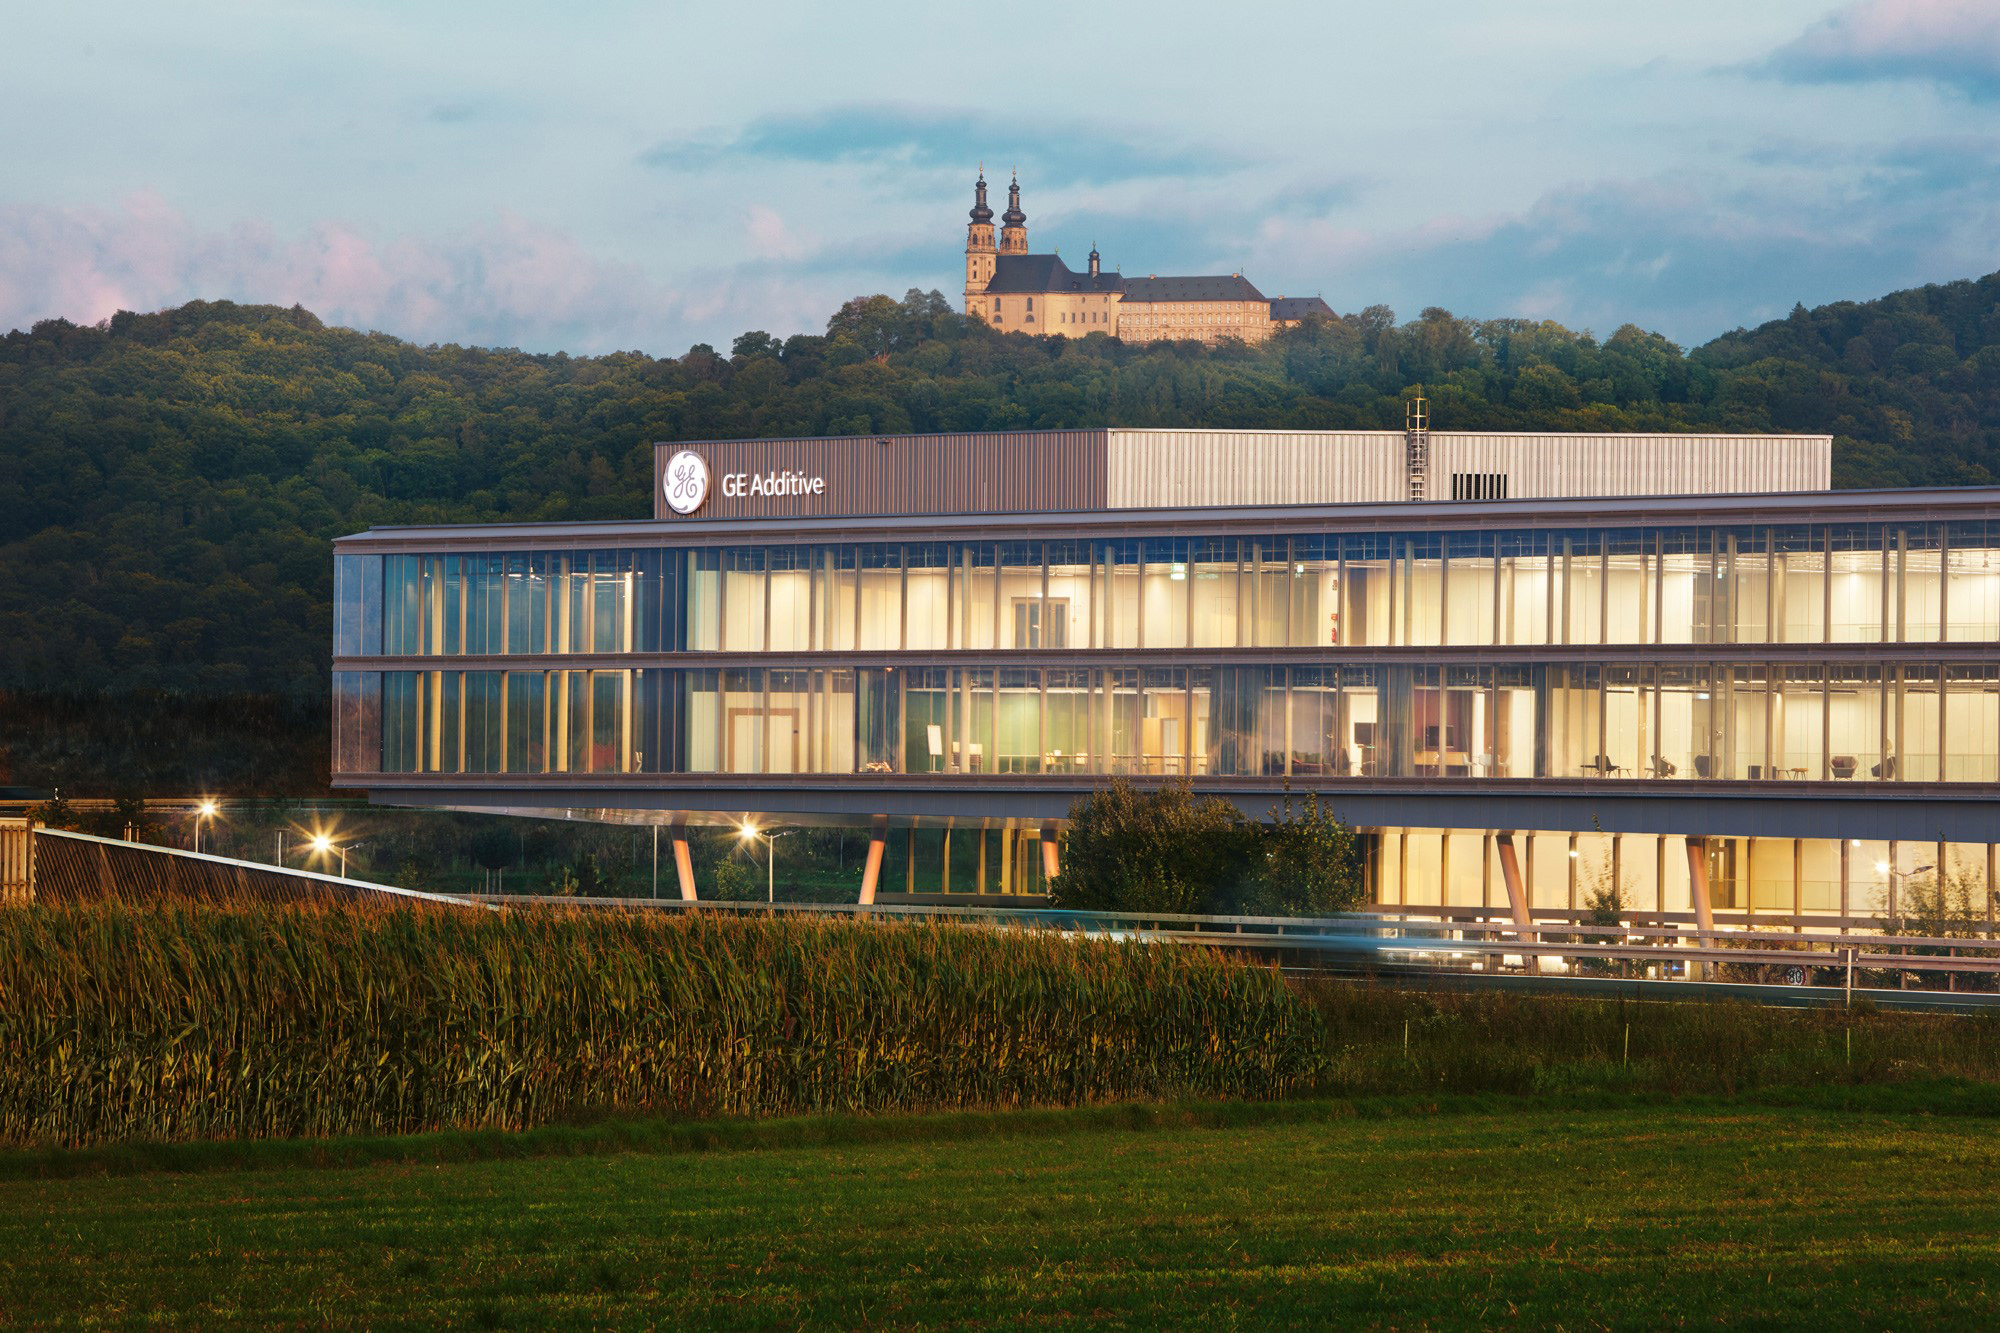 Außenperspektive Einbindung der Umgebung mit Burg im Hintergrund in der Gesamtbild des GE Additive Lichtenfels Campus